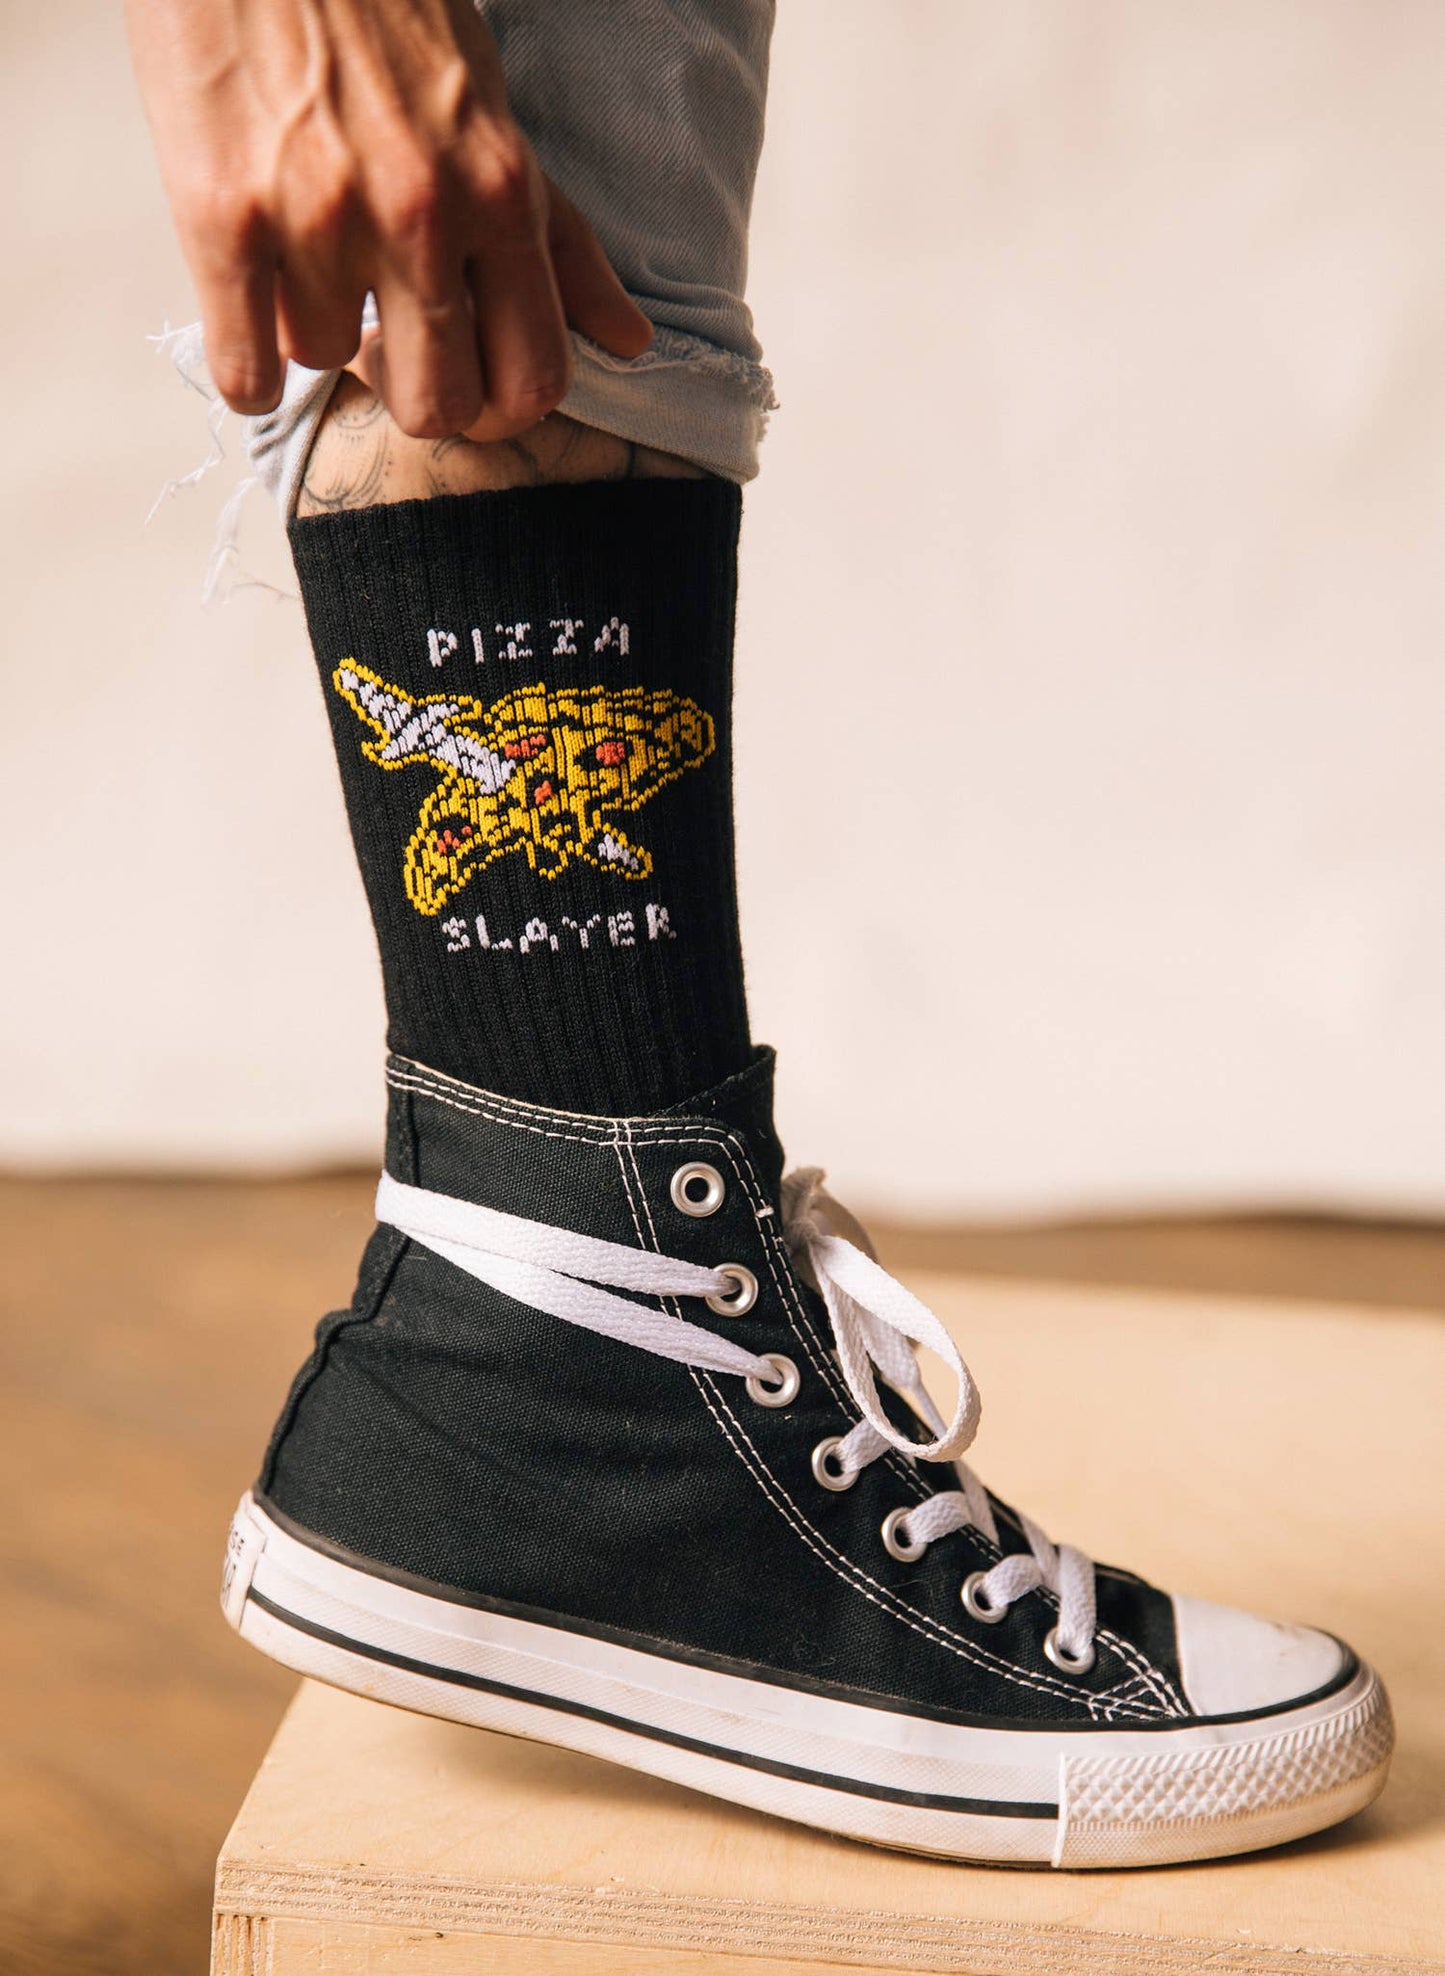 Pizza Slayer Socks